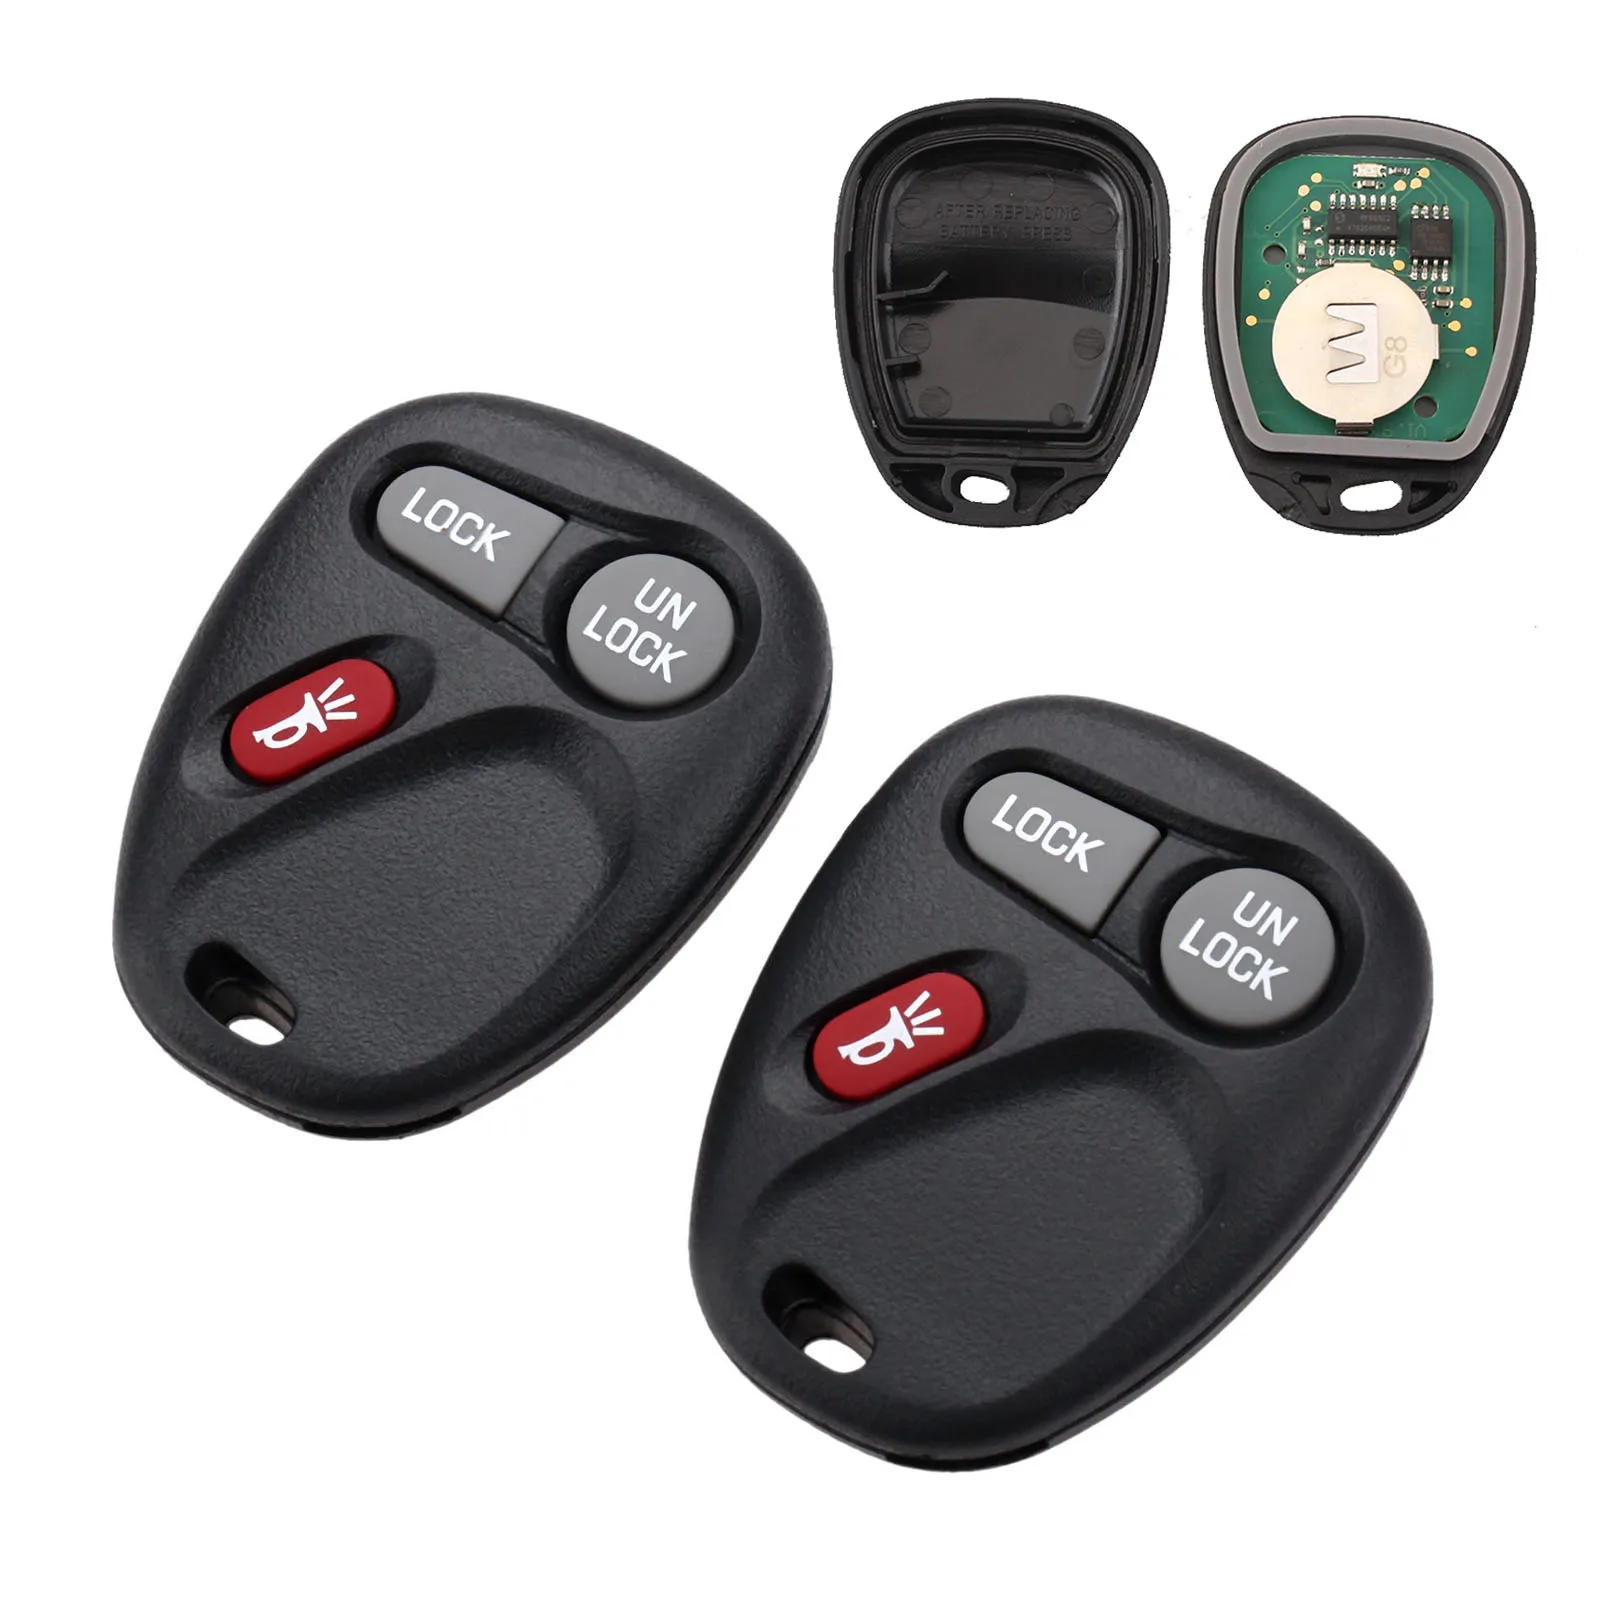 1Pc or 2Pcs Remote Key KOBUT1BT 315MHz 15732803 3 Button For Chevrolet Suburban Tahoe Silverado S10 GMC Suburban Sierra Sonoma